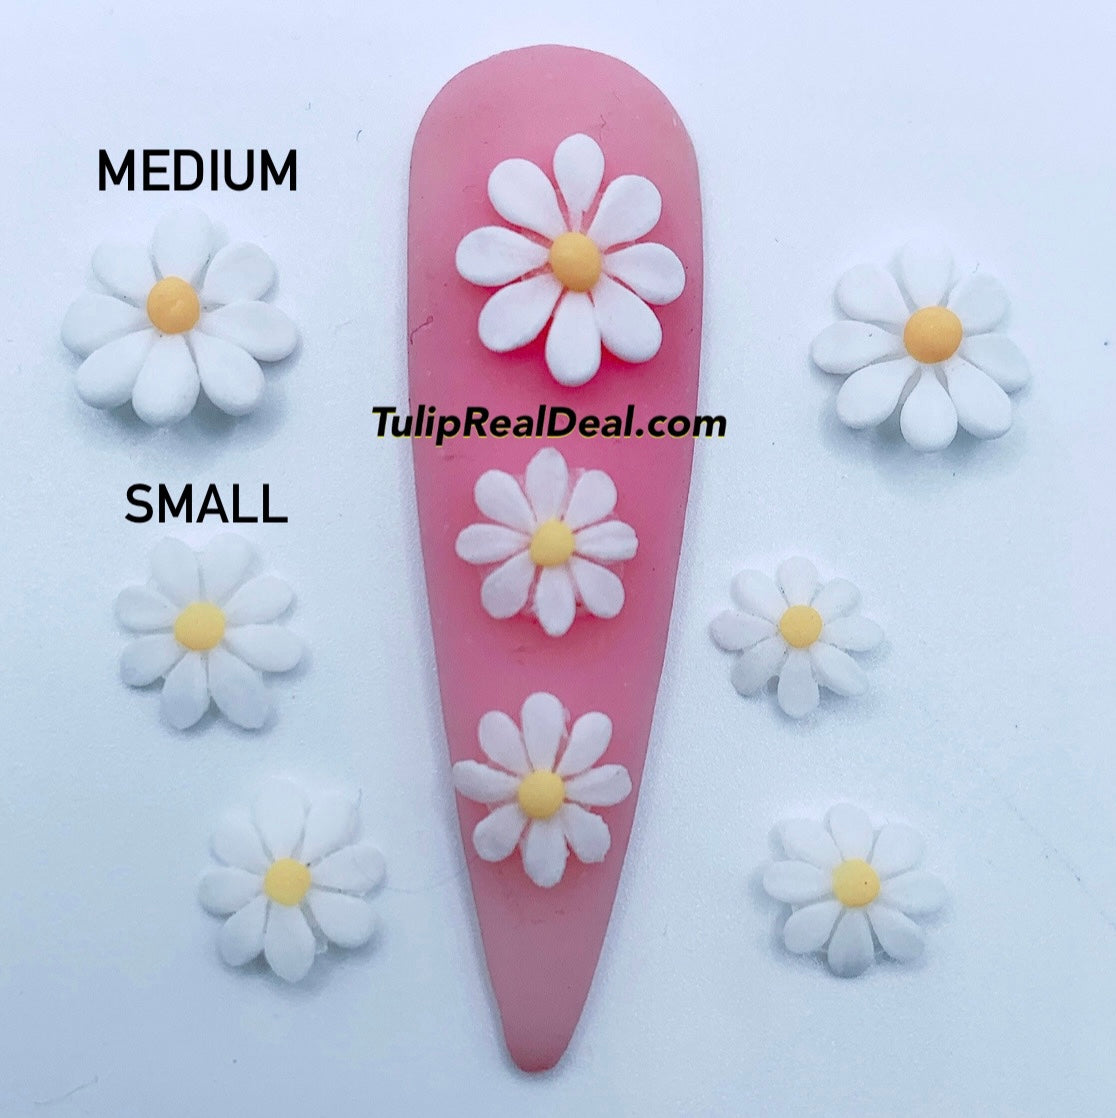 HANDMADE 3D Acrylic Daisy Flowers 4pcs